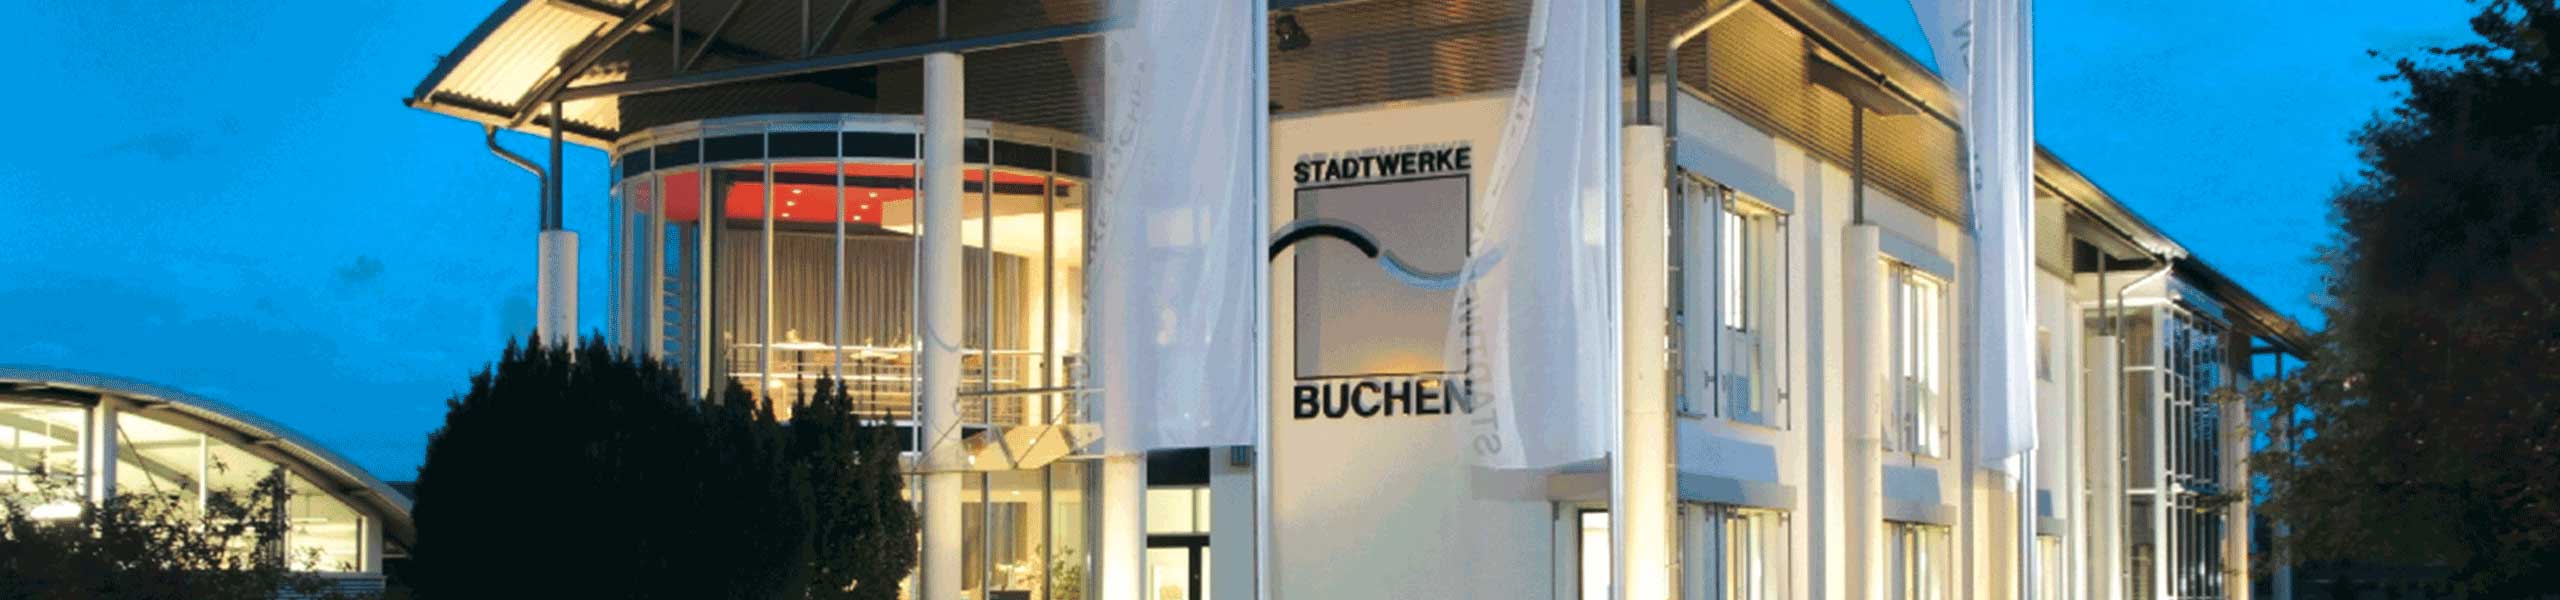 Stadtwerke Buchen GmbH & Co KG - Ihr Versorger vor Ort - Bäder